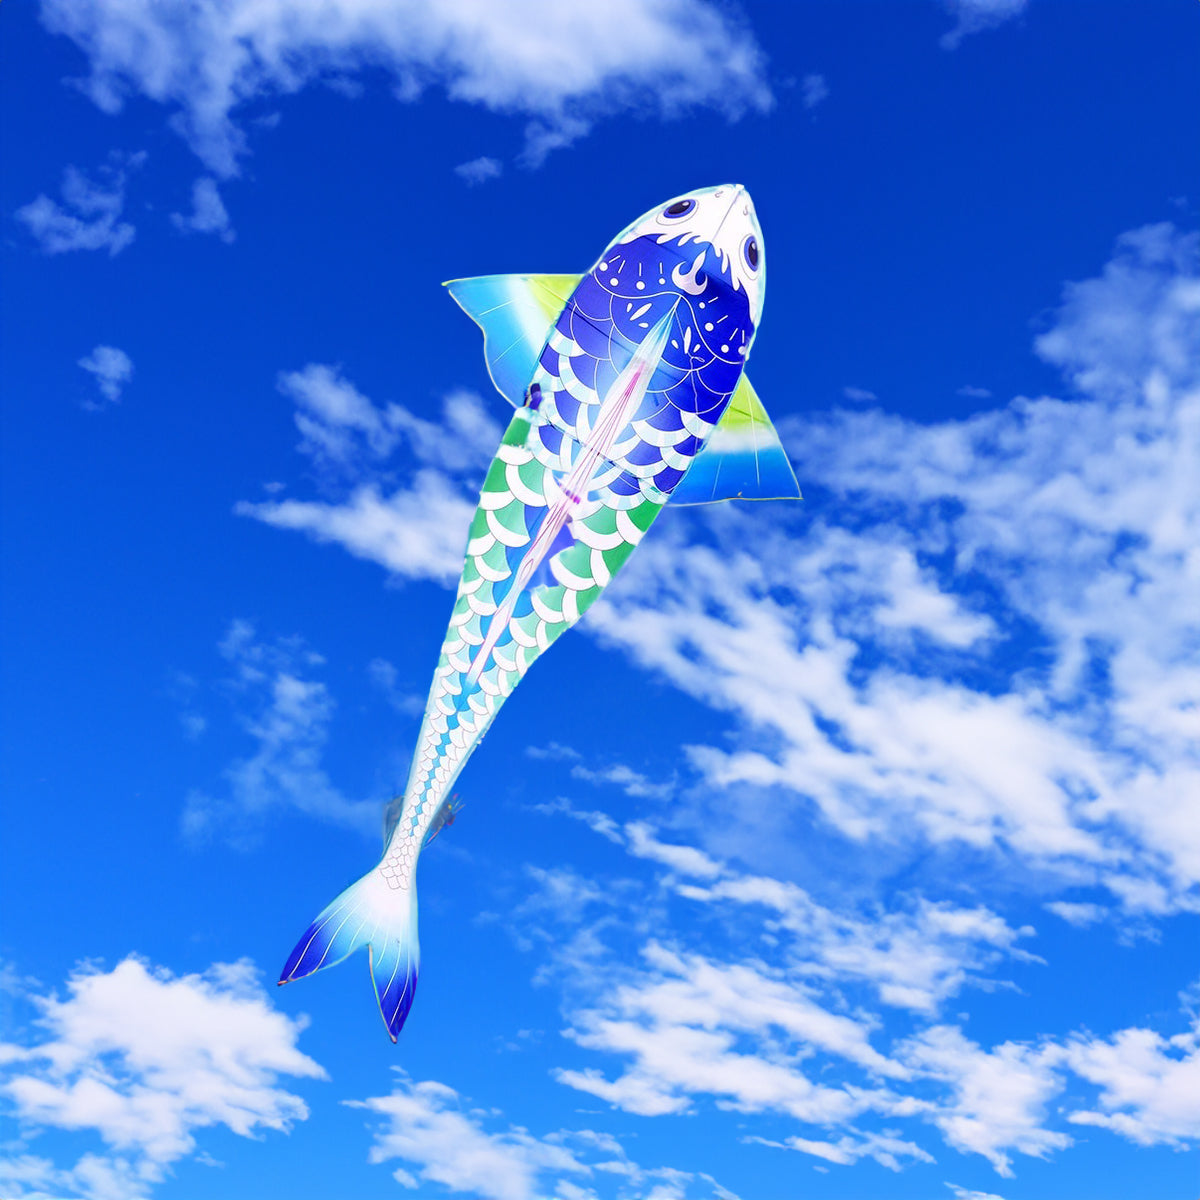 Carp fish blue kite